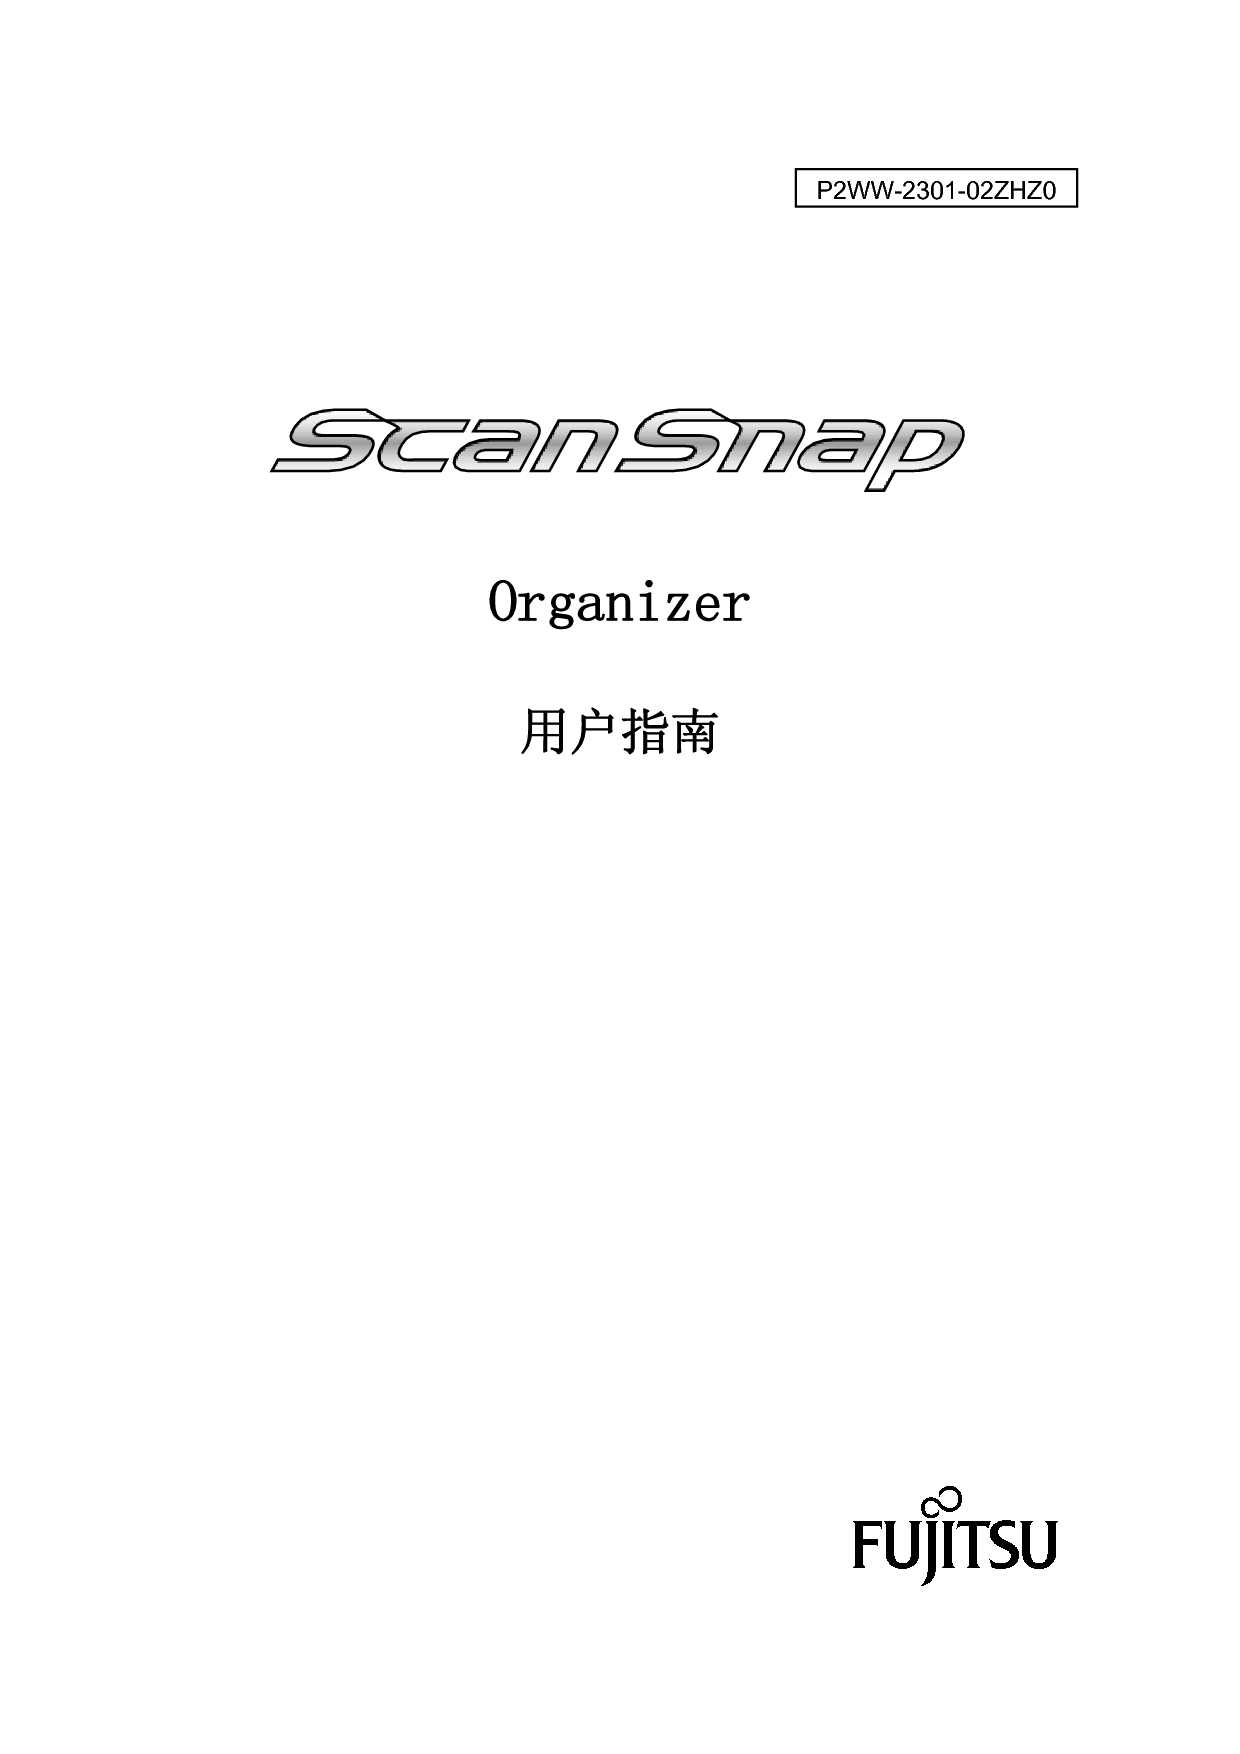 富士通 Fujitsu ScanSnap Organizer 2008 用户指南 封面